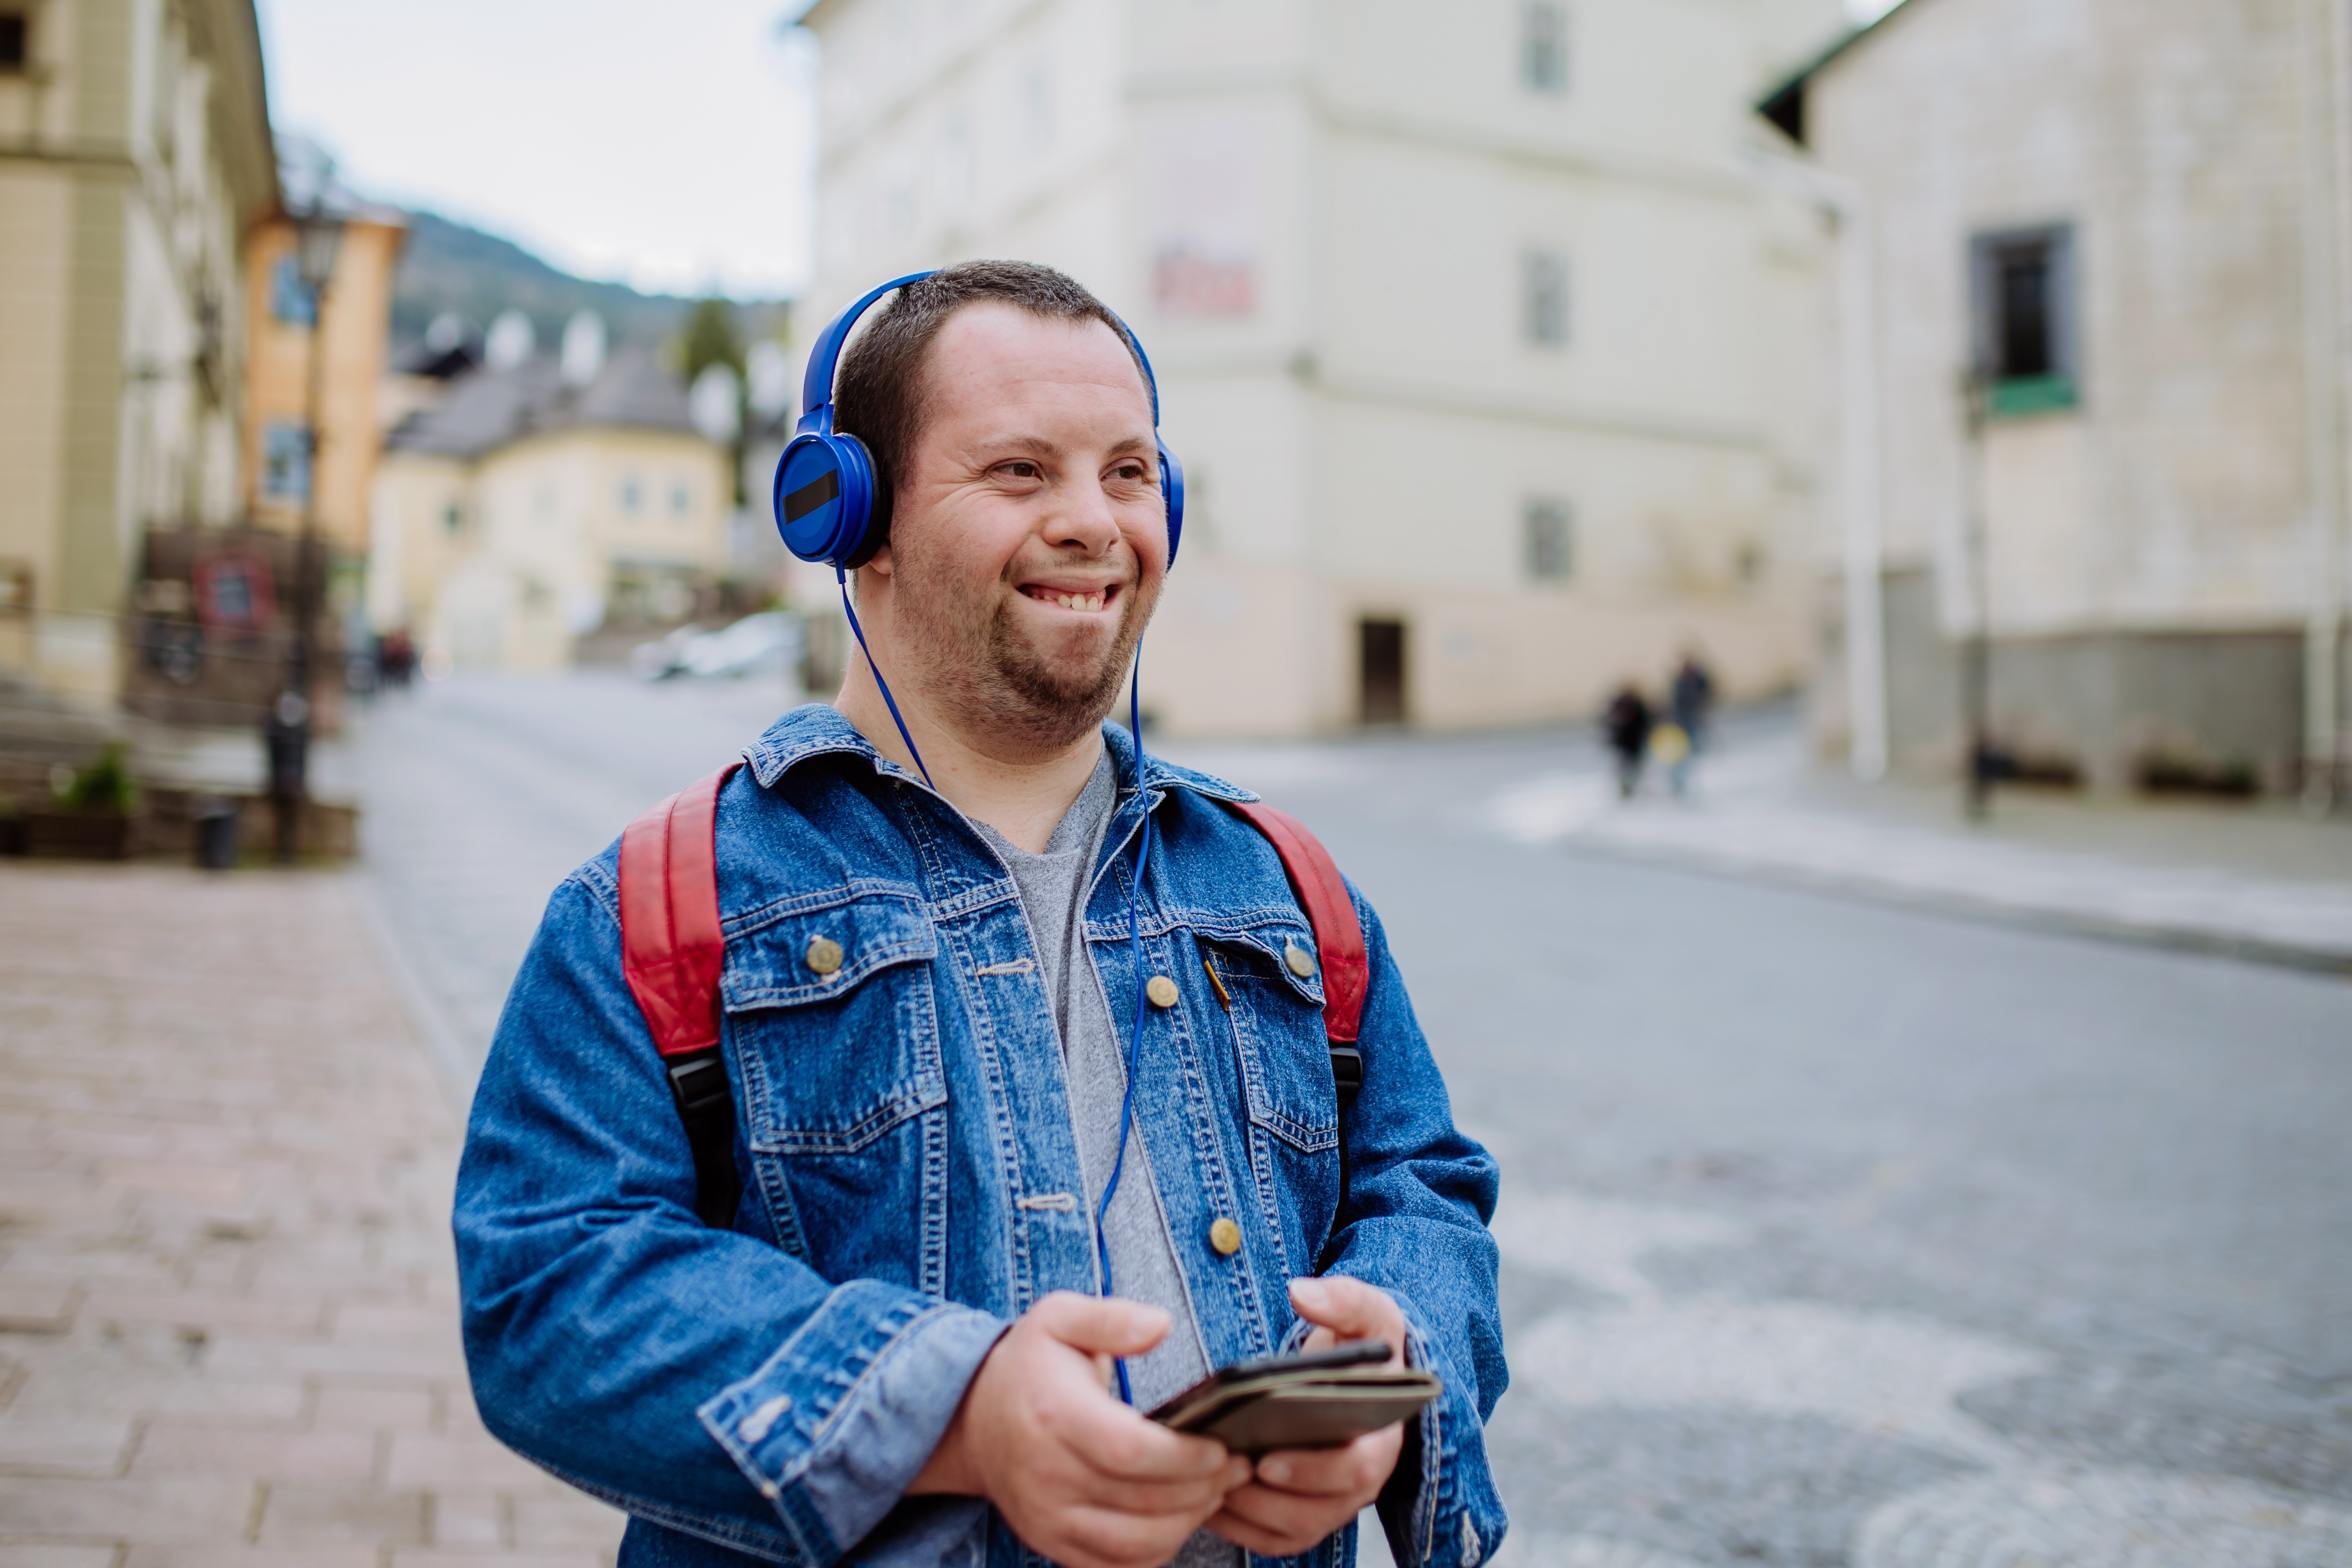 Ein Mann mit Down-Syndrom hört Musik, während er auf der Straße geht. | Quelle: Shutterstock